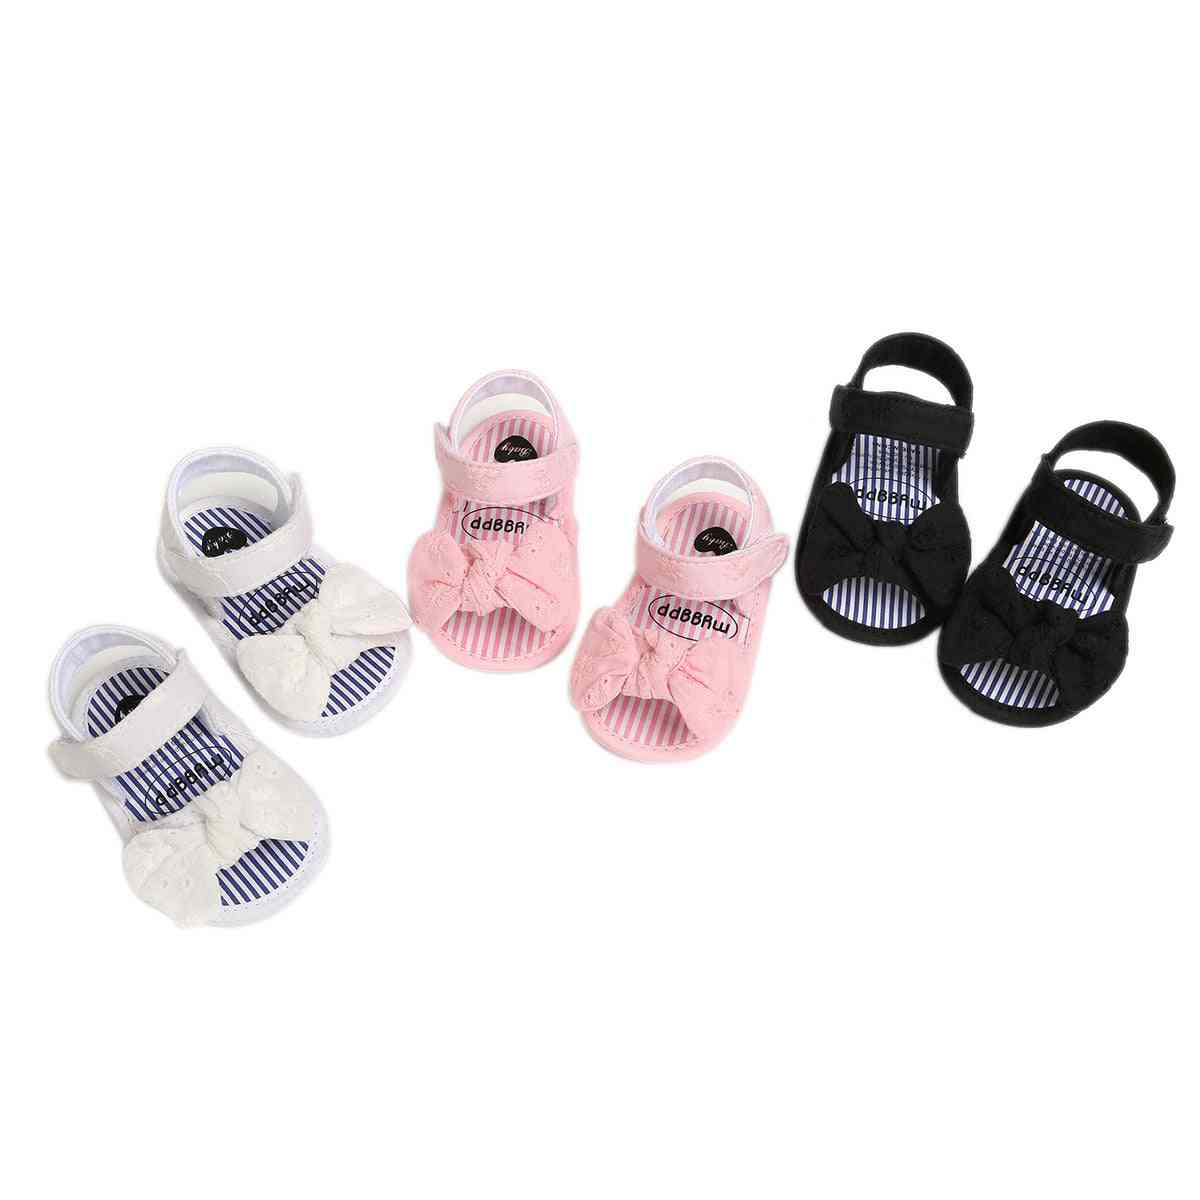 Sandalias planas de princesa planas con suela blanda antideslizante y punta abierta de verano para niñas pequeñas con lazo - negro / 0-6 meses